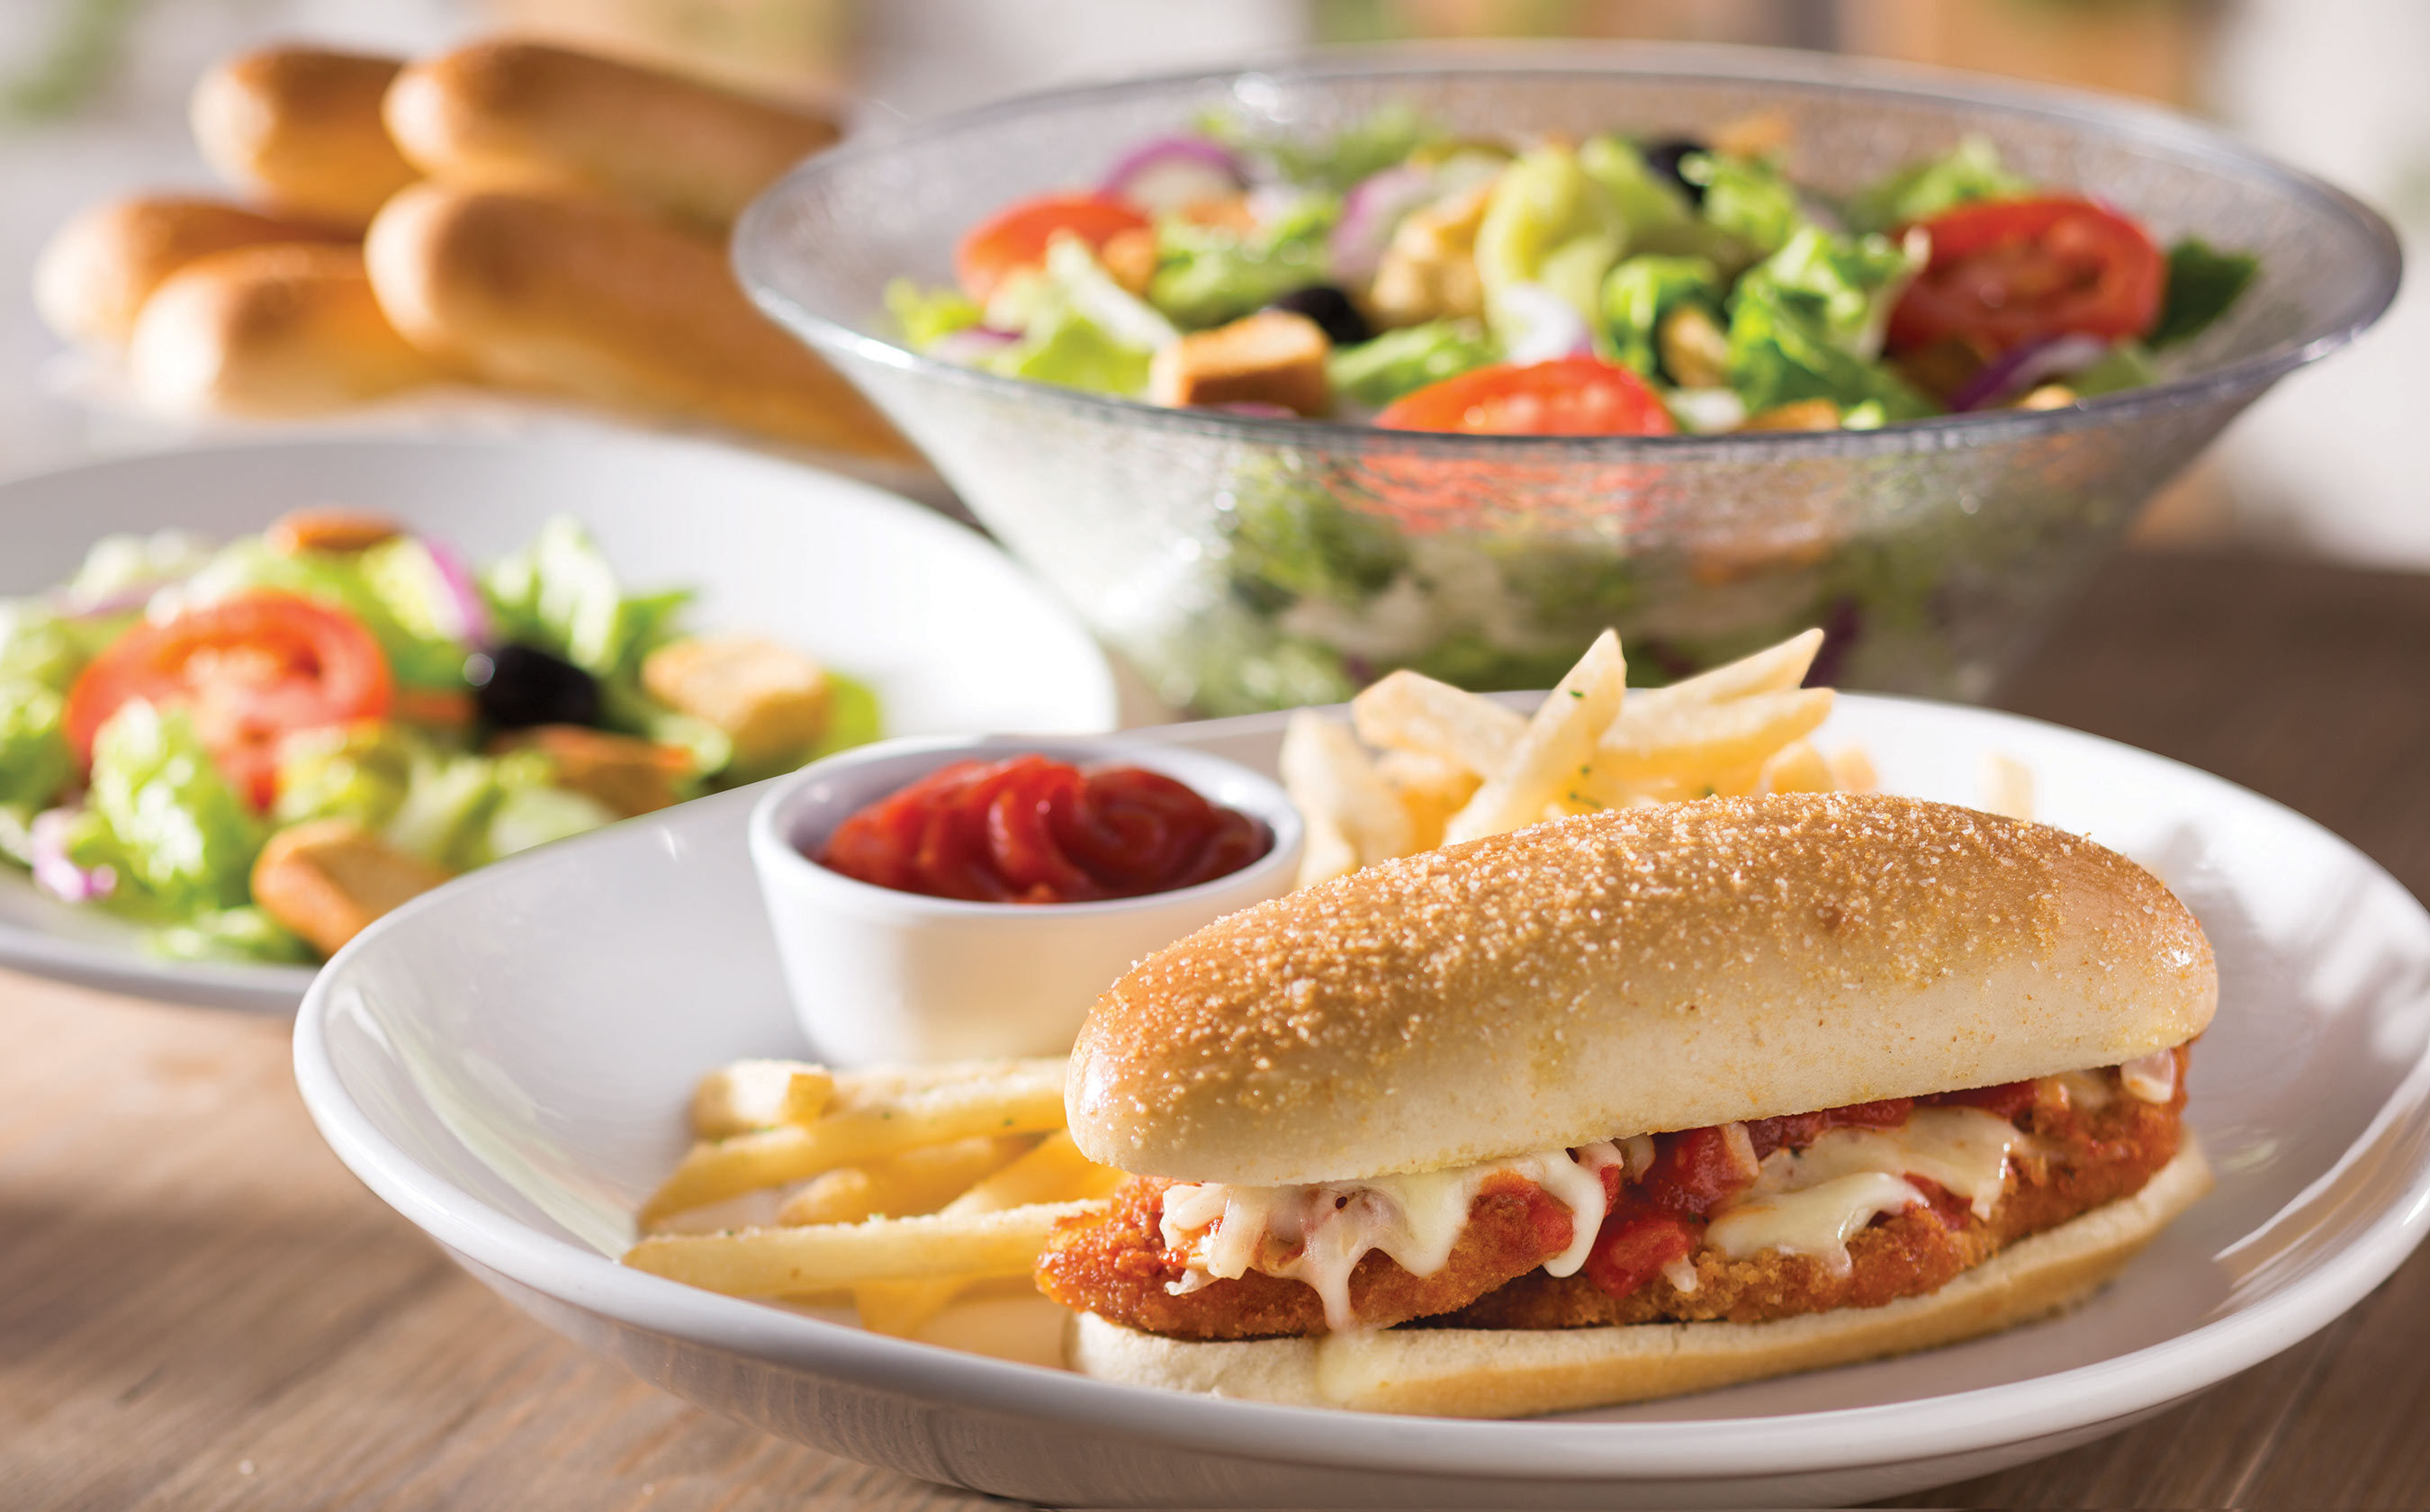 Olive Garden Breadstick Sandwiches Make Their Menu Debut